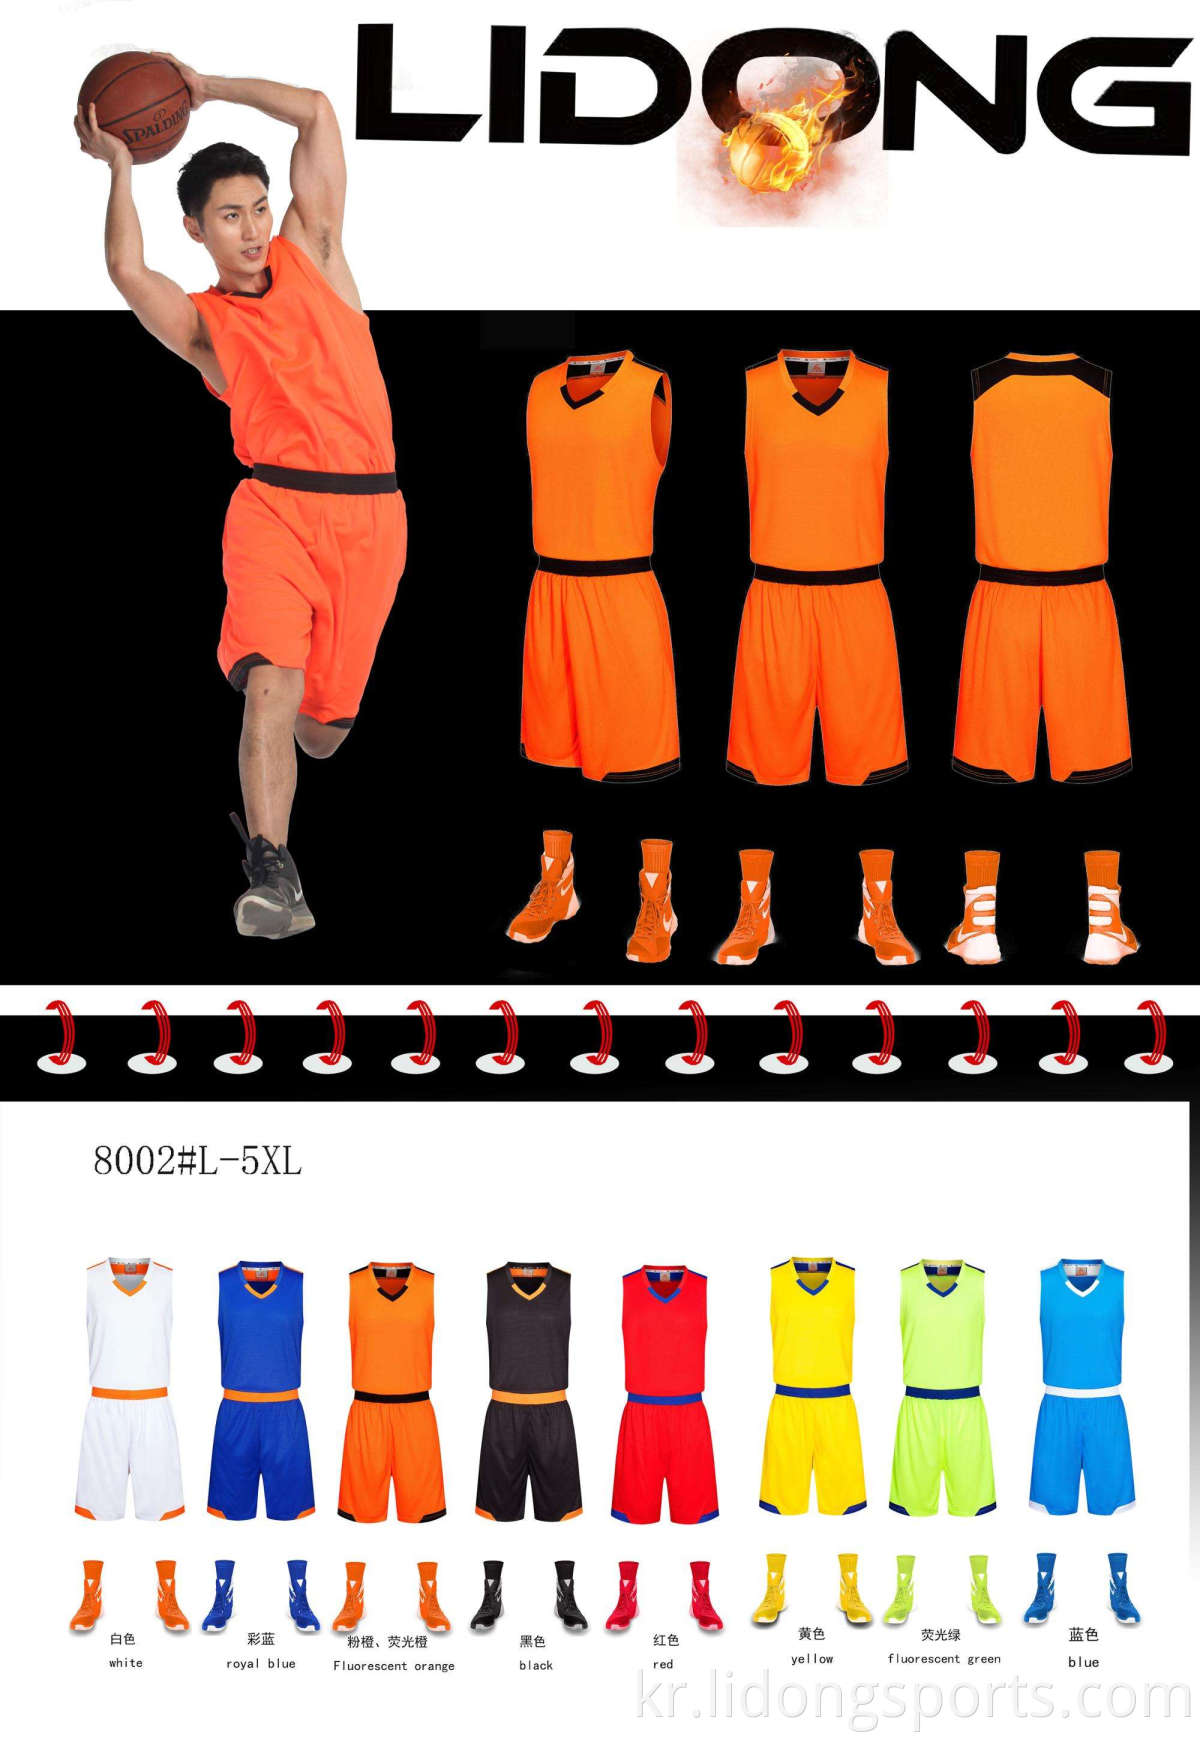 농구 유니폼 유니폼 디자인 색상 빨간색 전문 디자인 농구 유니폼